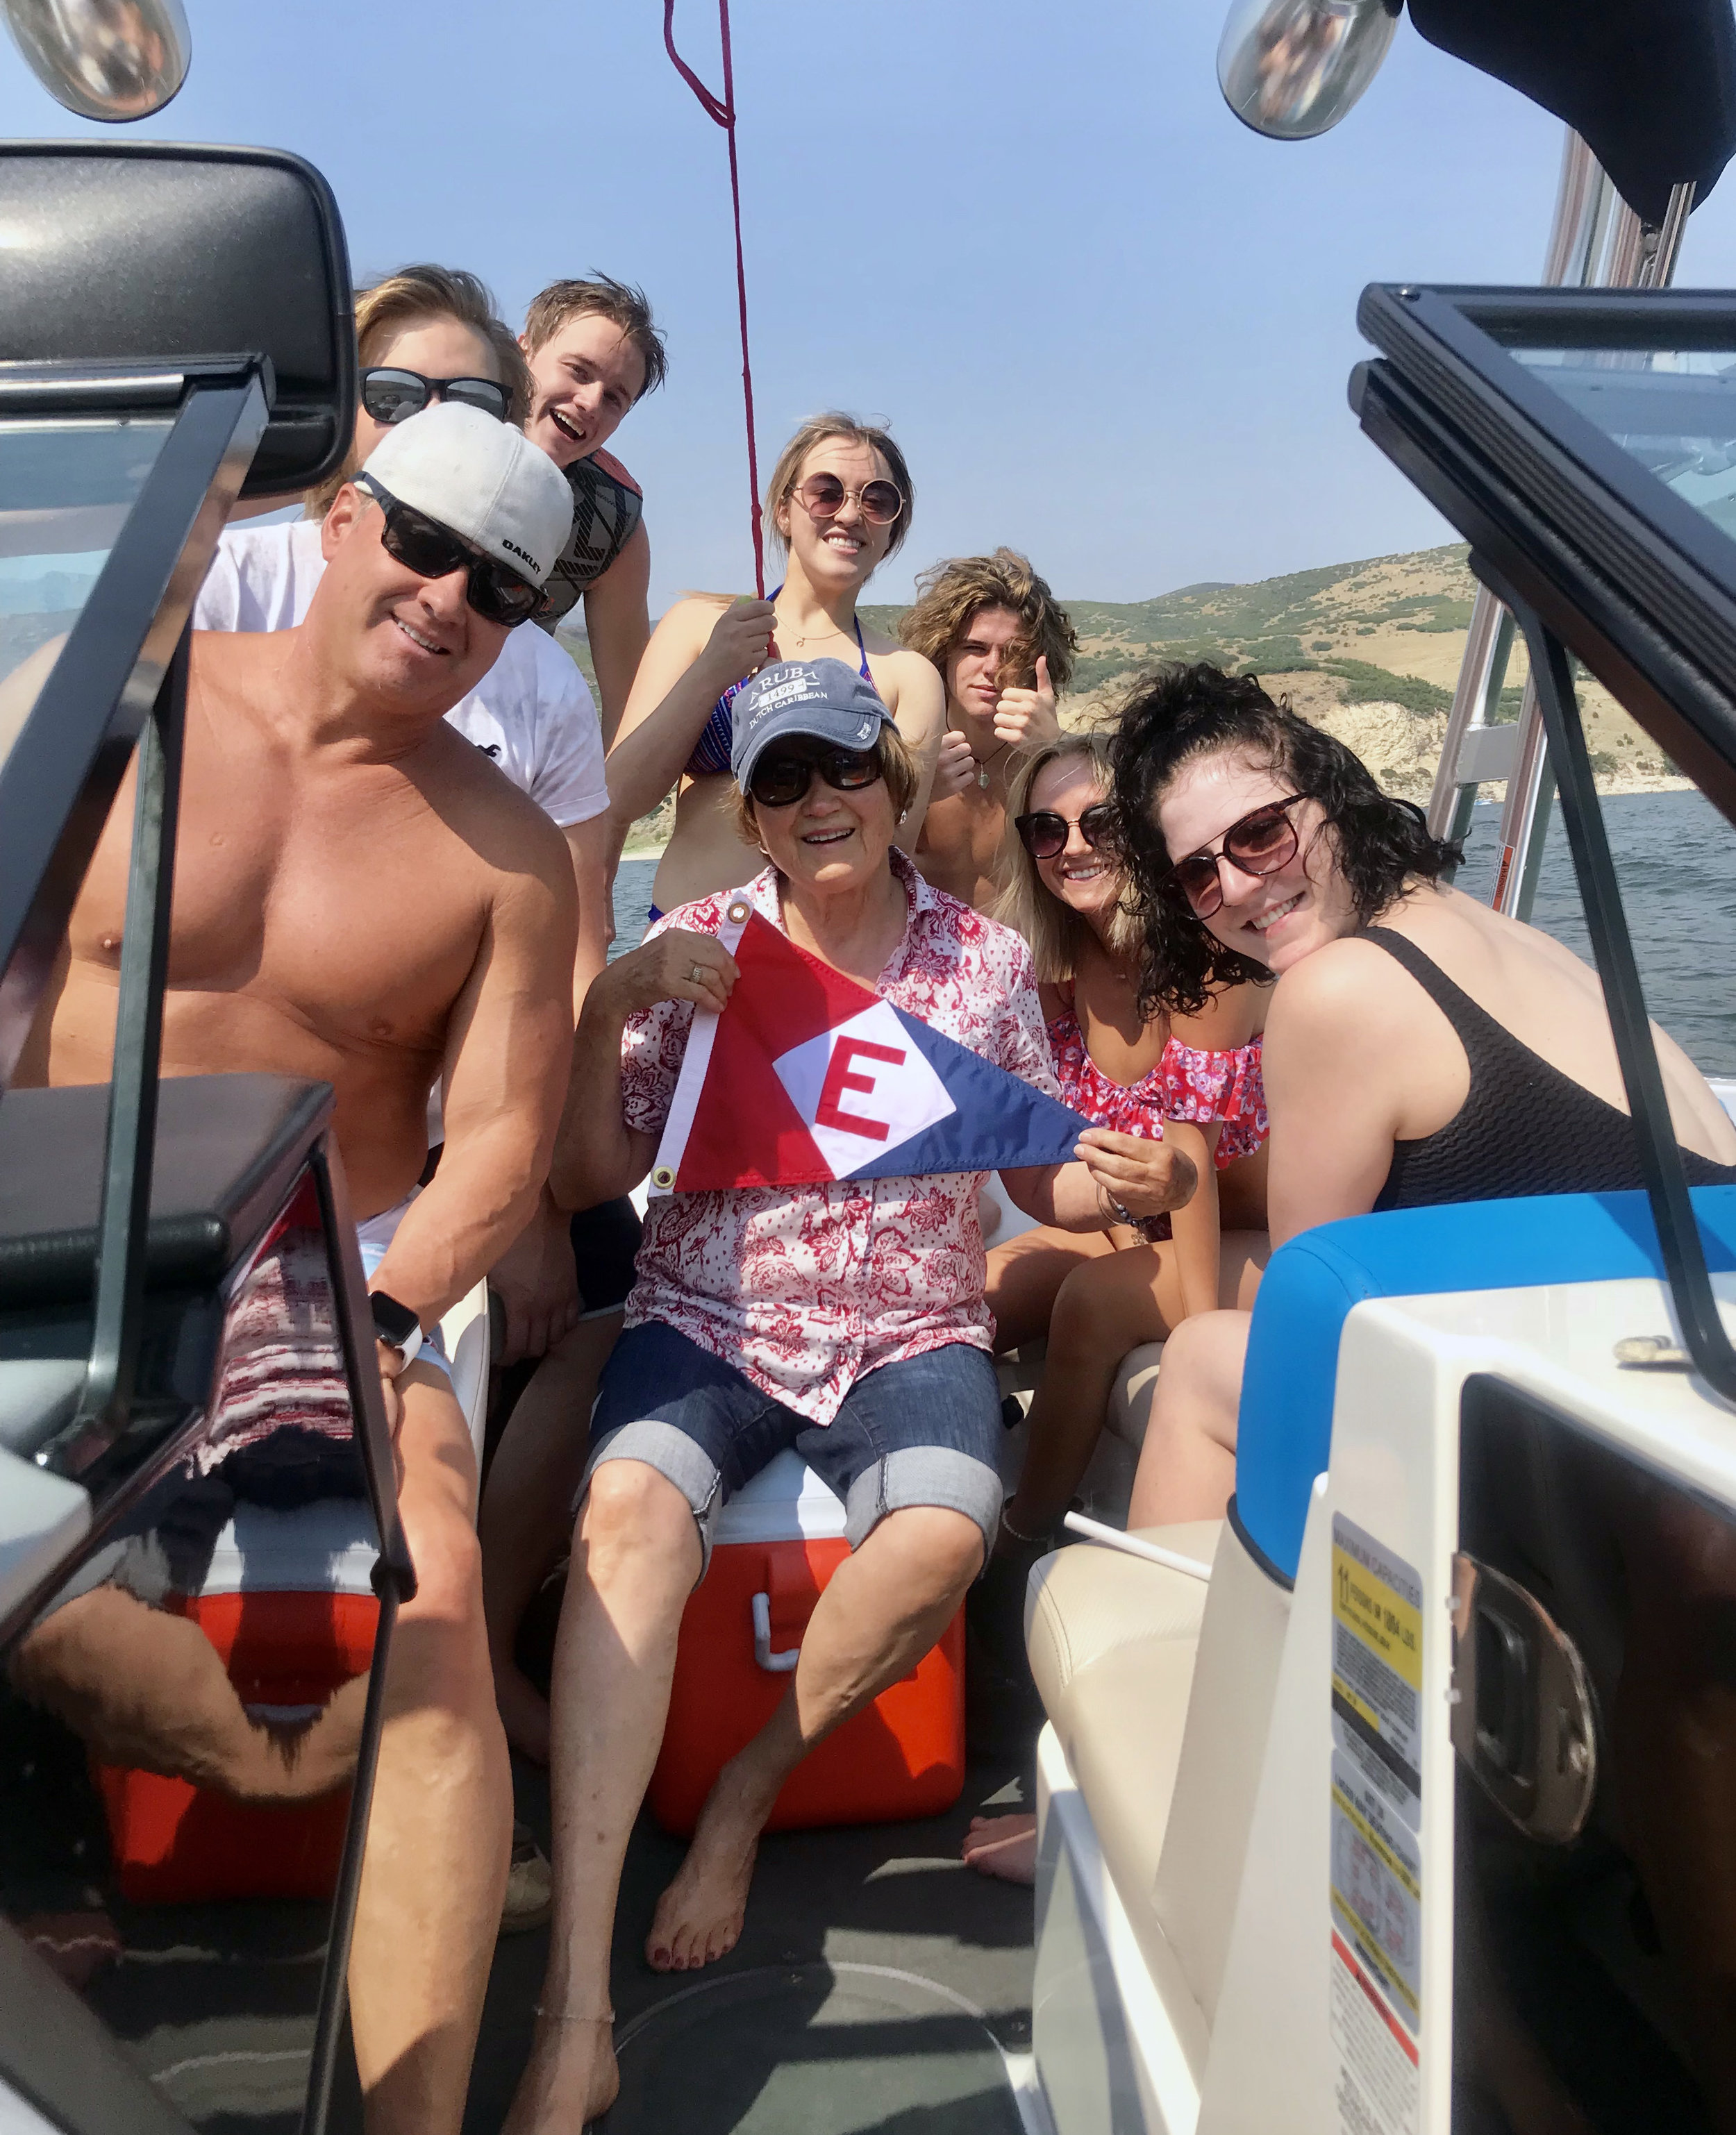  Anne, her son, grandkids and friends show their EYC pride at Deer Creek Reservoir, Utah 